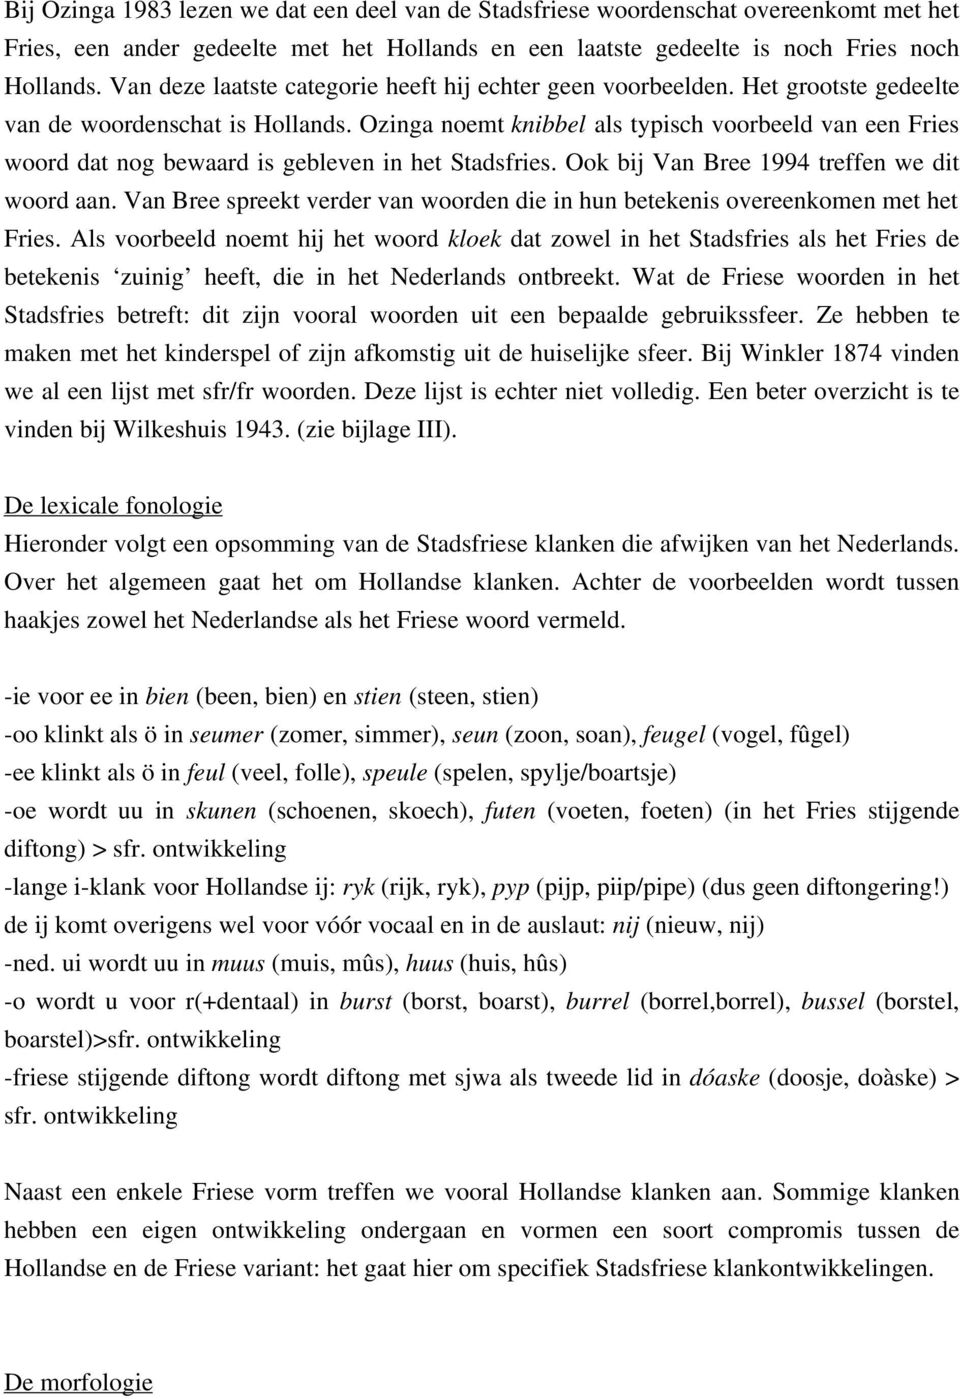 Ozinga noemt knibbel als typisch voorbeeld van een Fries woord dat nog bewaard is gebleven in het Stadsfries. Ook bij Van Bree 1994 treffen we dit woord aan.